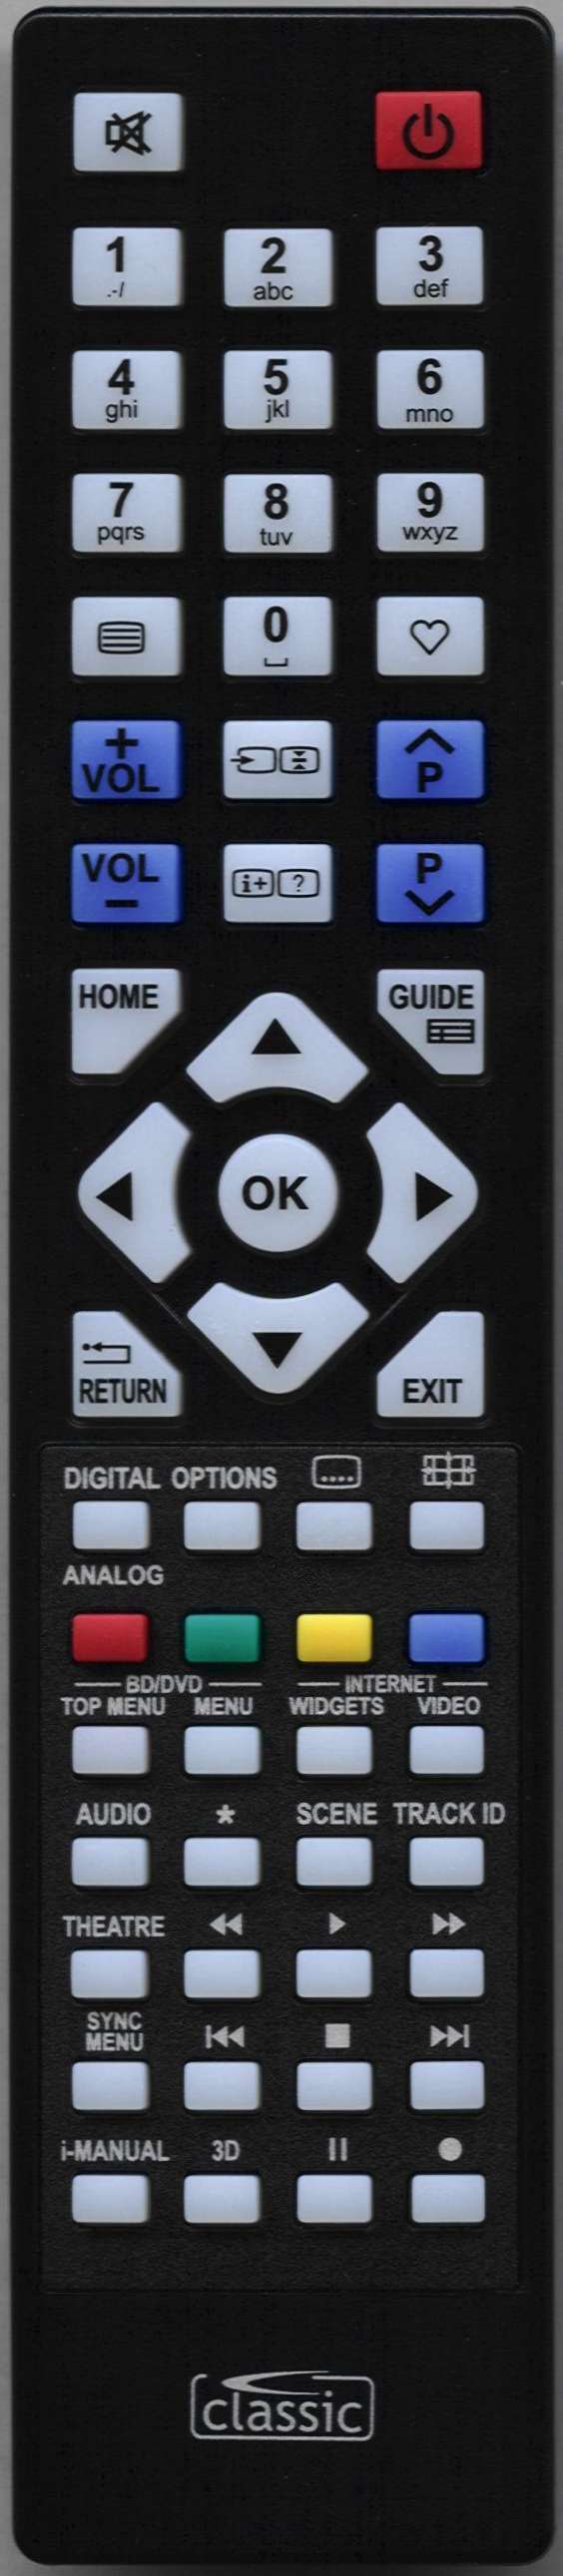 SONY KDL32HX753 Remote Control Alternative